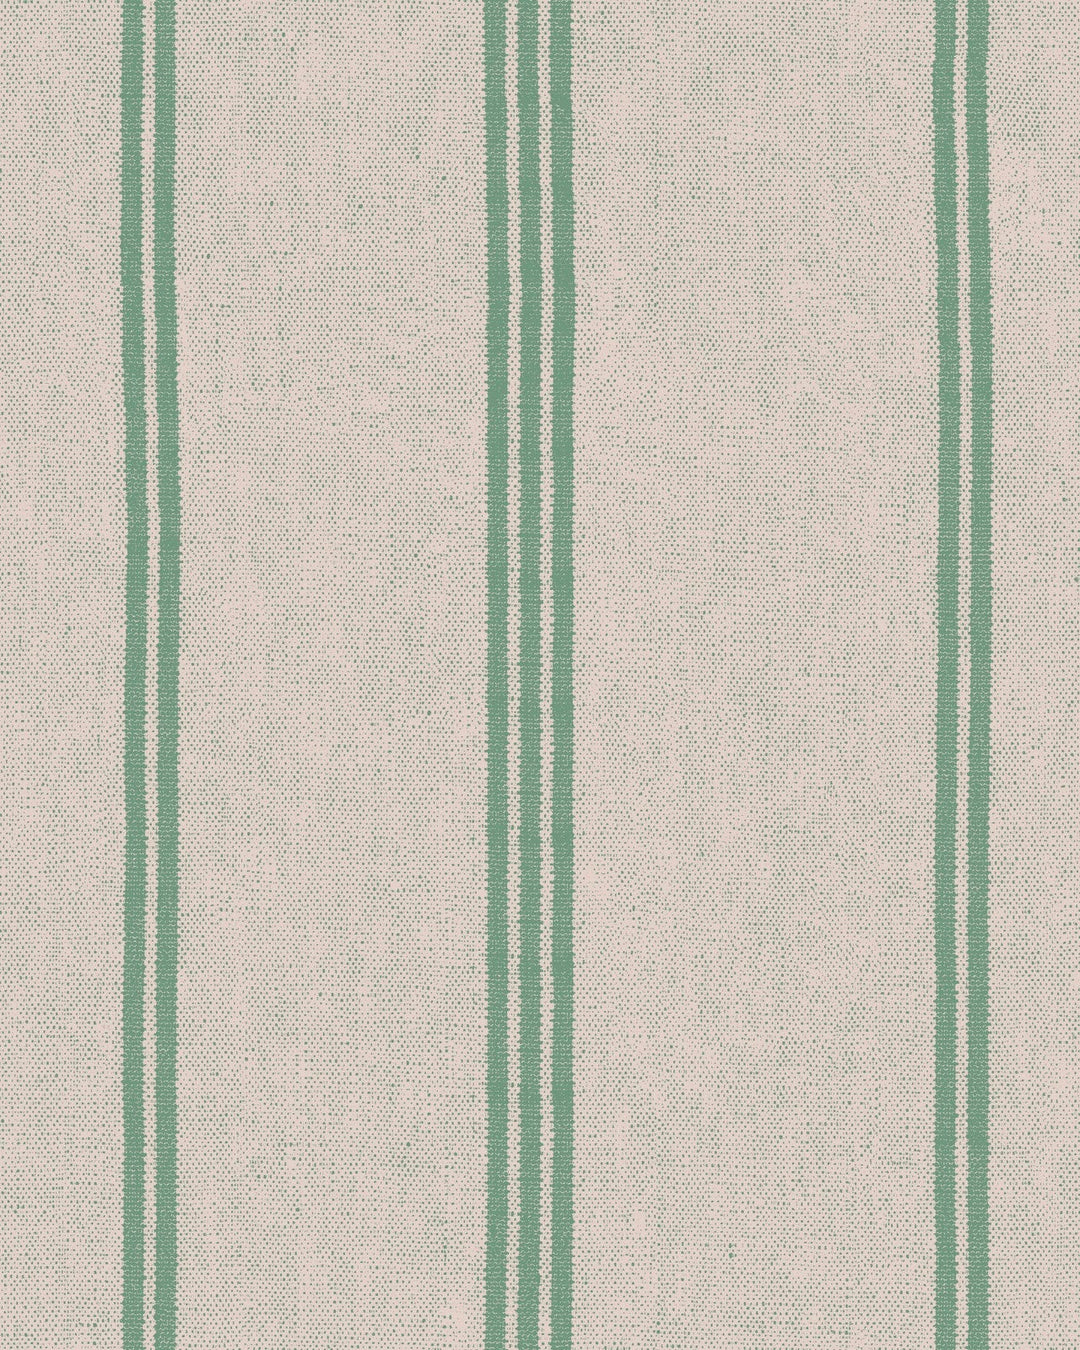 pin-up-mini-milk-wallpaper-green-taupe-stripes-minnie-kemp-mindthegap